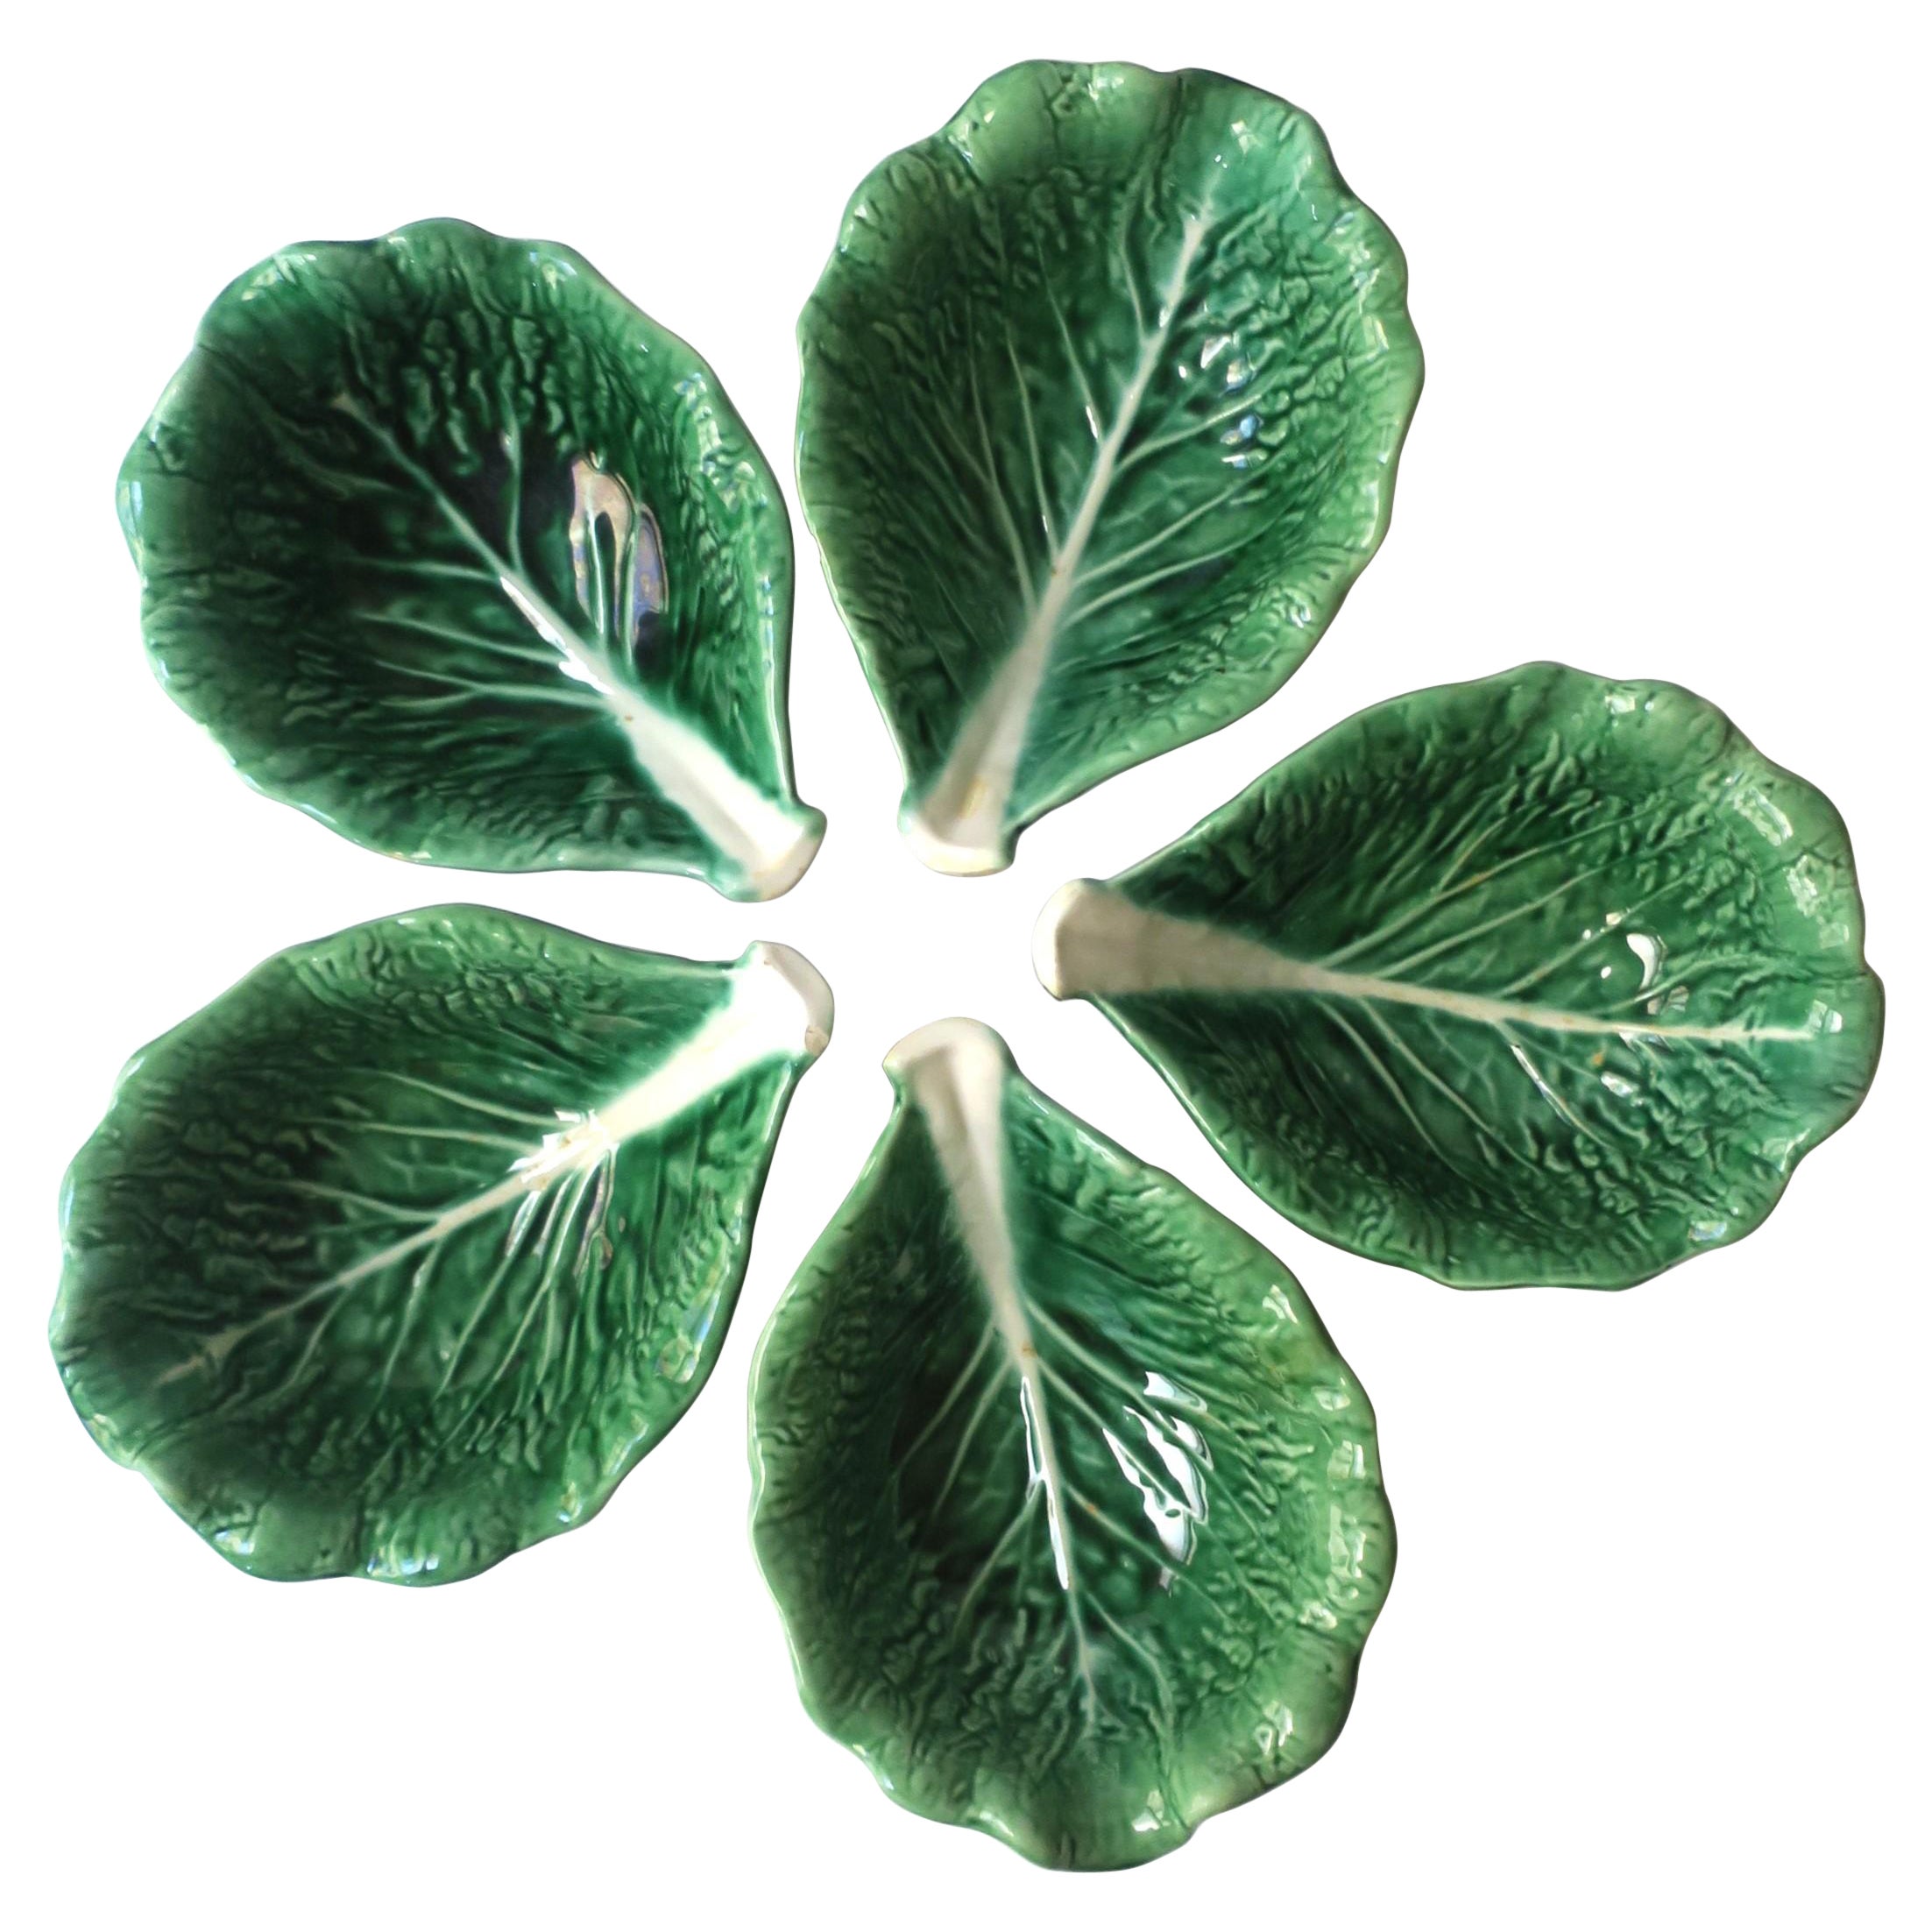 Grünes Servier- oder Dip-Schale aus Gefäß oder Cabbage-Blatt Servierschale im Trompe l'Oeil-Stil, 5 verfügbar